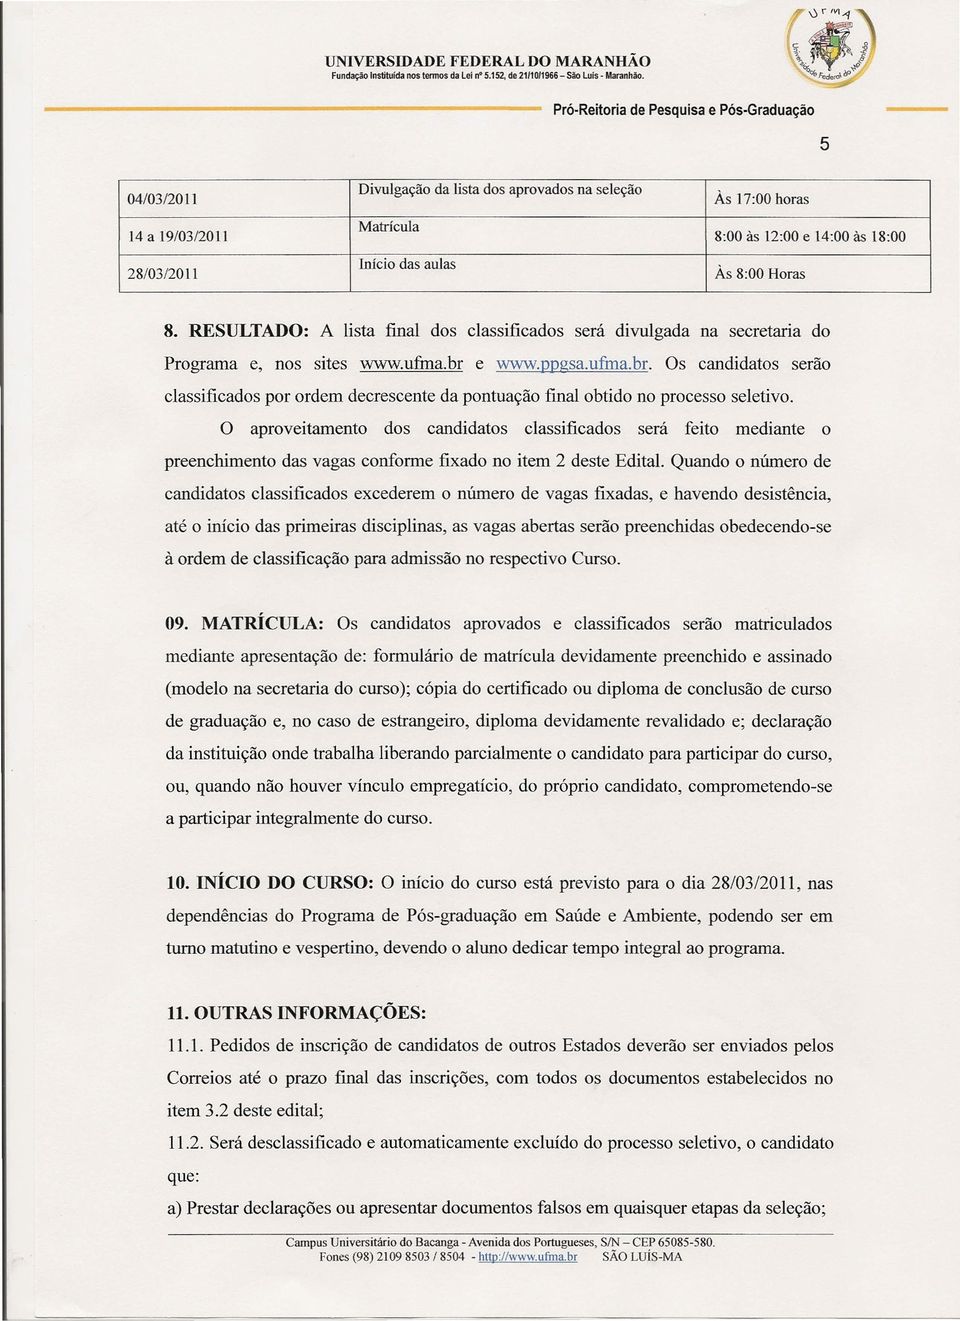 RESULTADO: A lista final dos classificados será divulgada na secretaria do Programa e, nos sites www.ufrna.br 